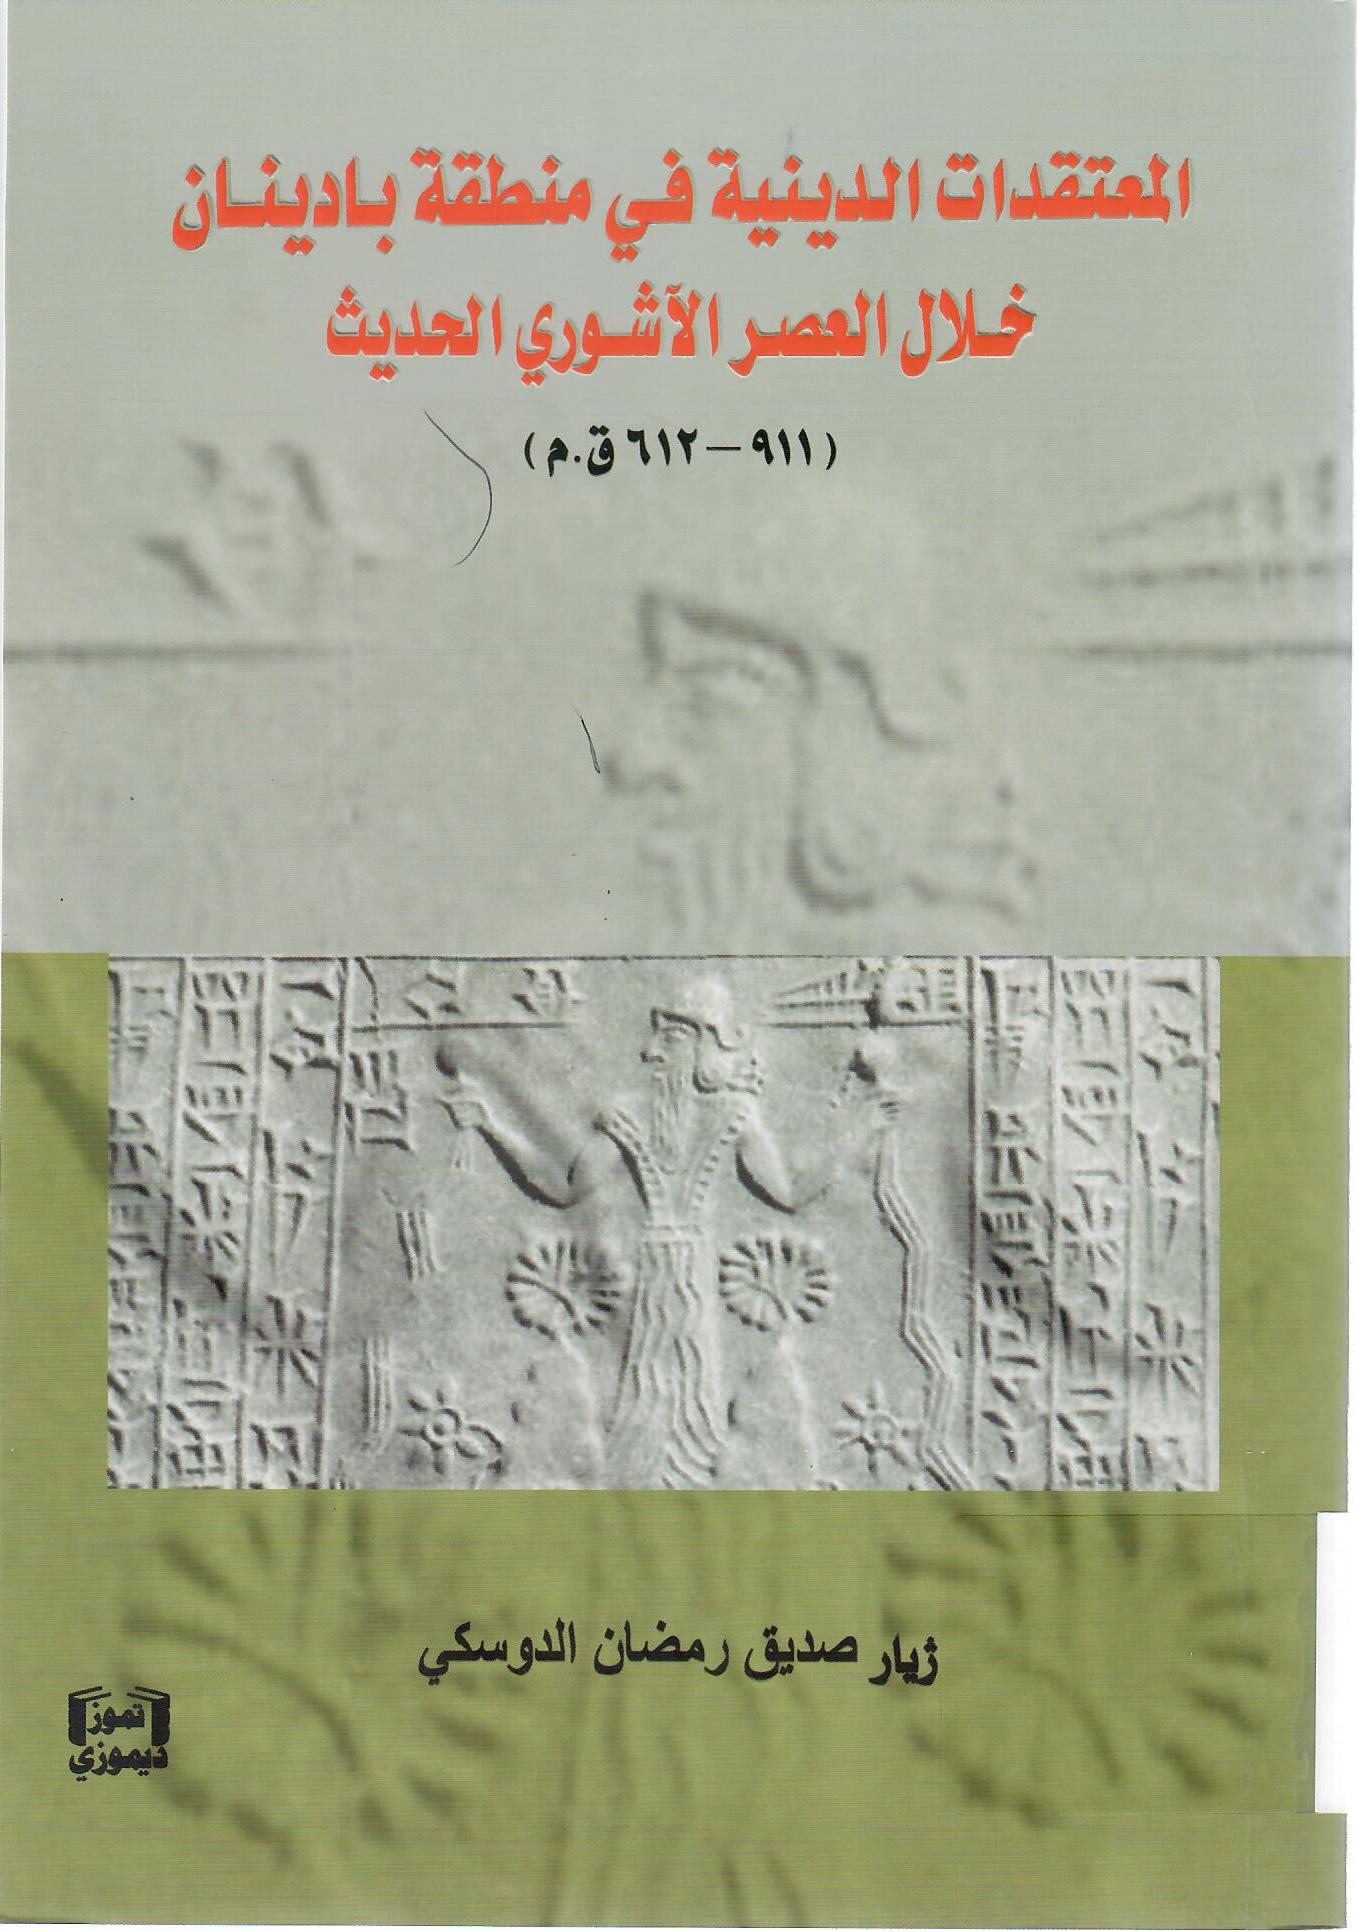 المعتقدات الدينية في منطقة بادينان خلال العصر الآشوري الحديث 911-612 ق.م